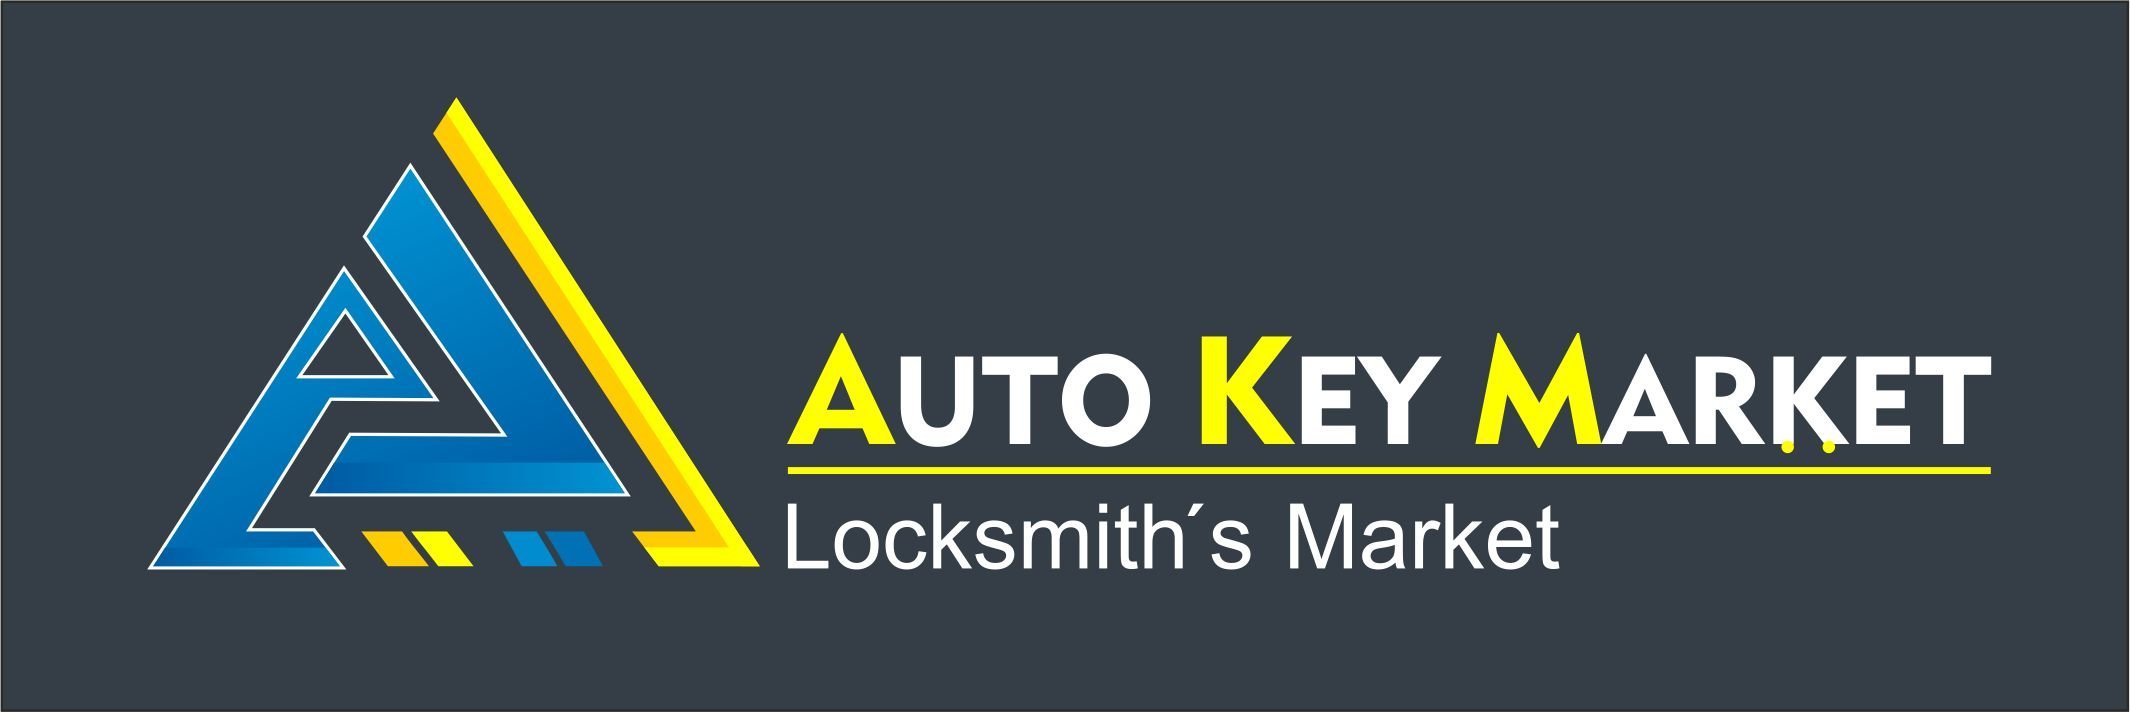 Auto Key Market | Locksmith Market 